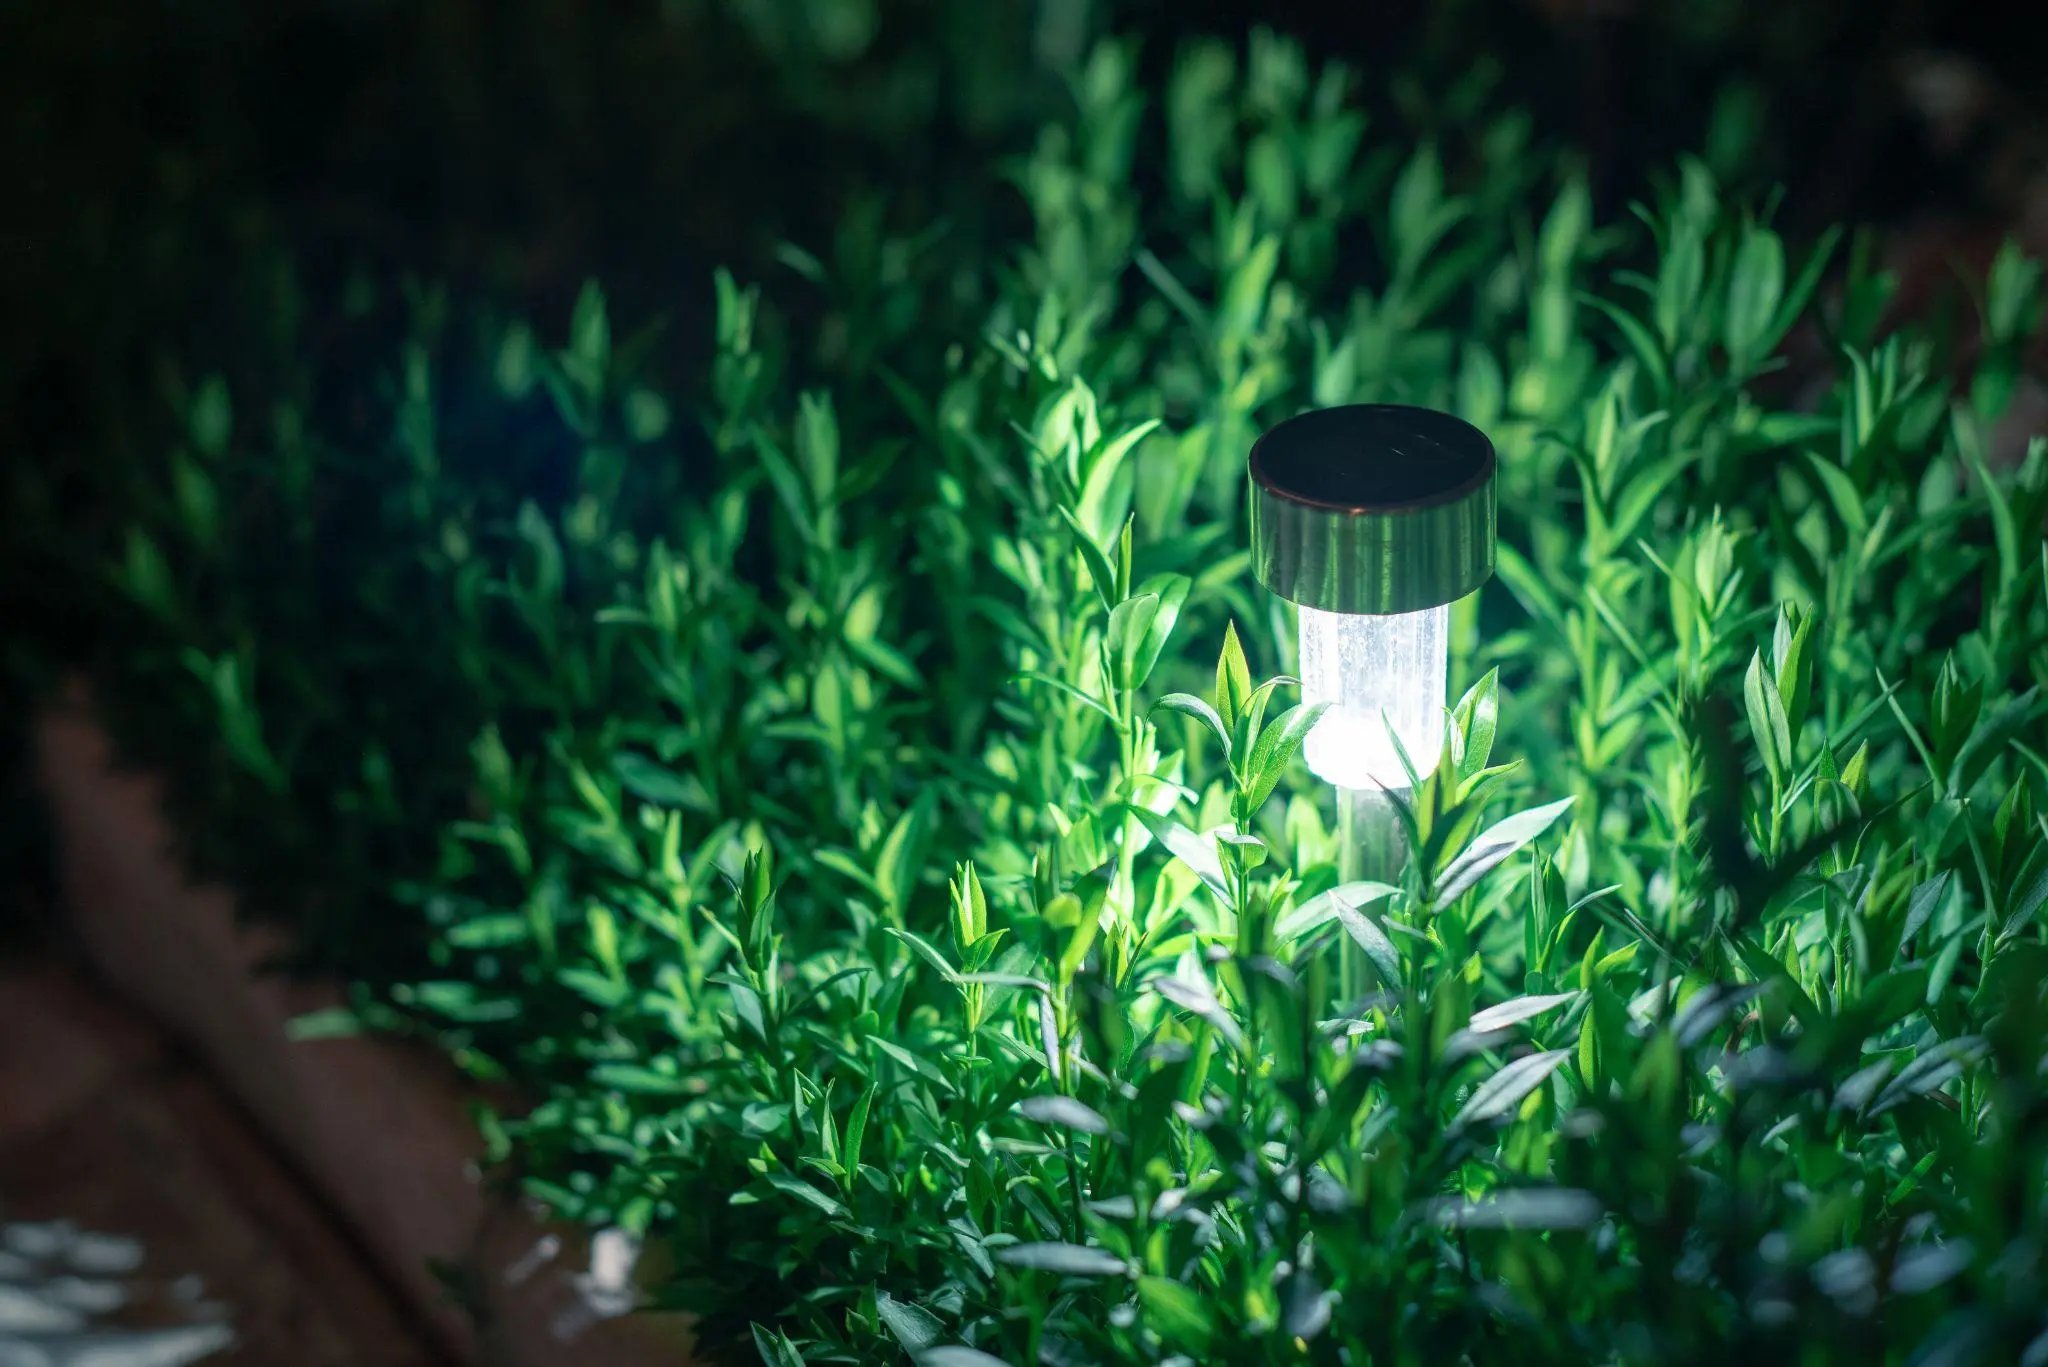 solar lanterns garden light with shrubs at home